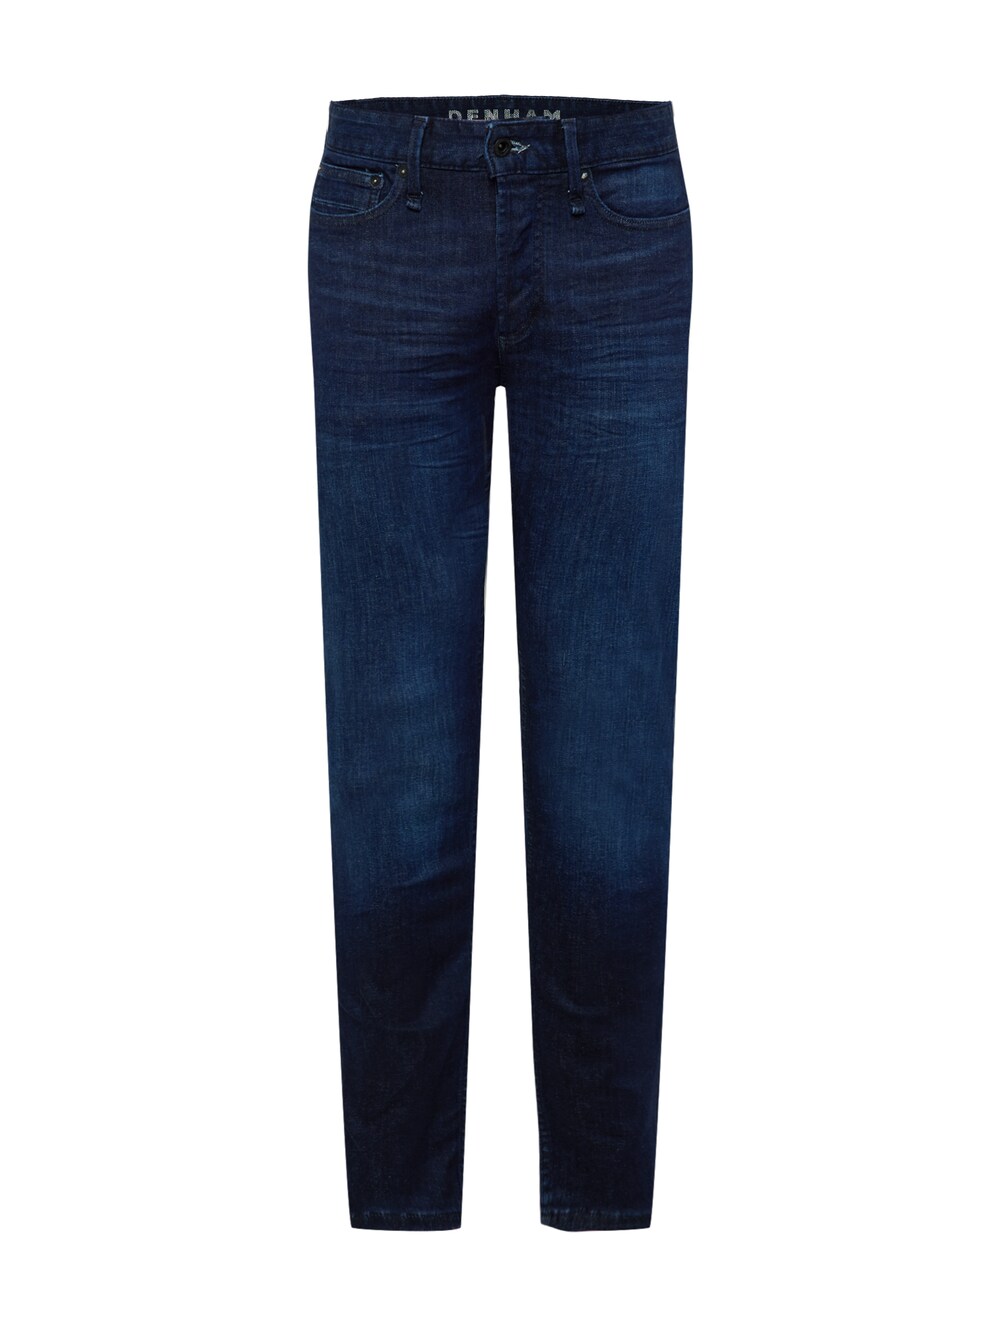 Обычные джинсы Denham Bolt, темно-синий